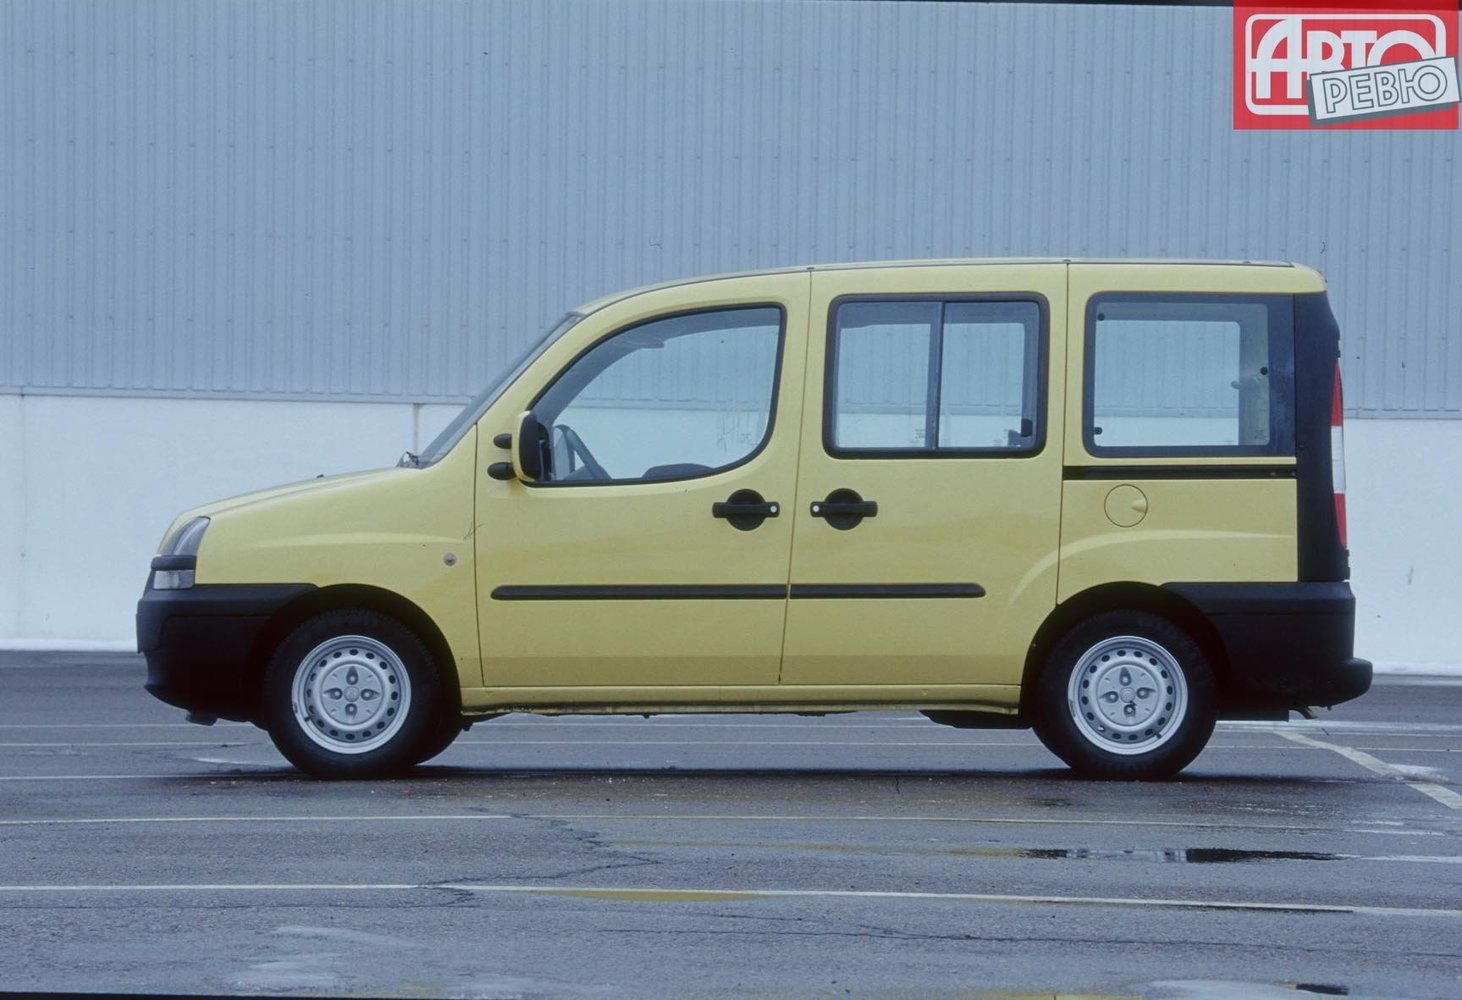 минивэн Fiat Doblo 2001 - 2005г выпуска модификация 1.2 MT (65 л.с.)